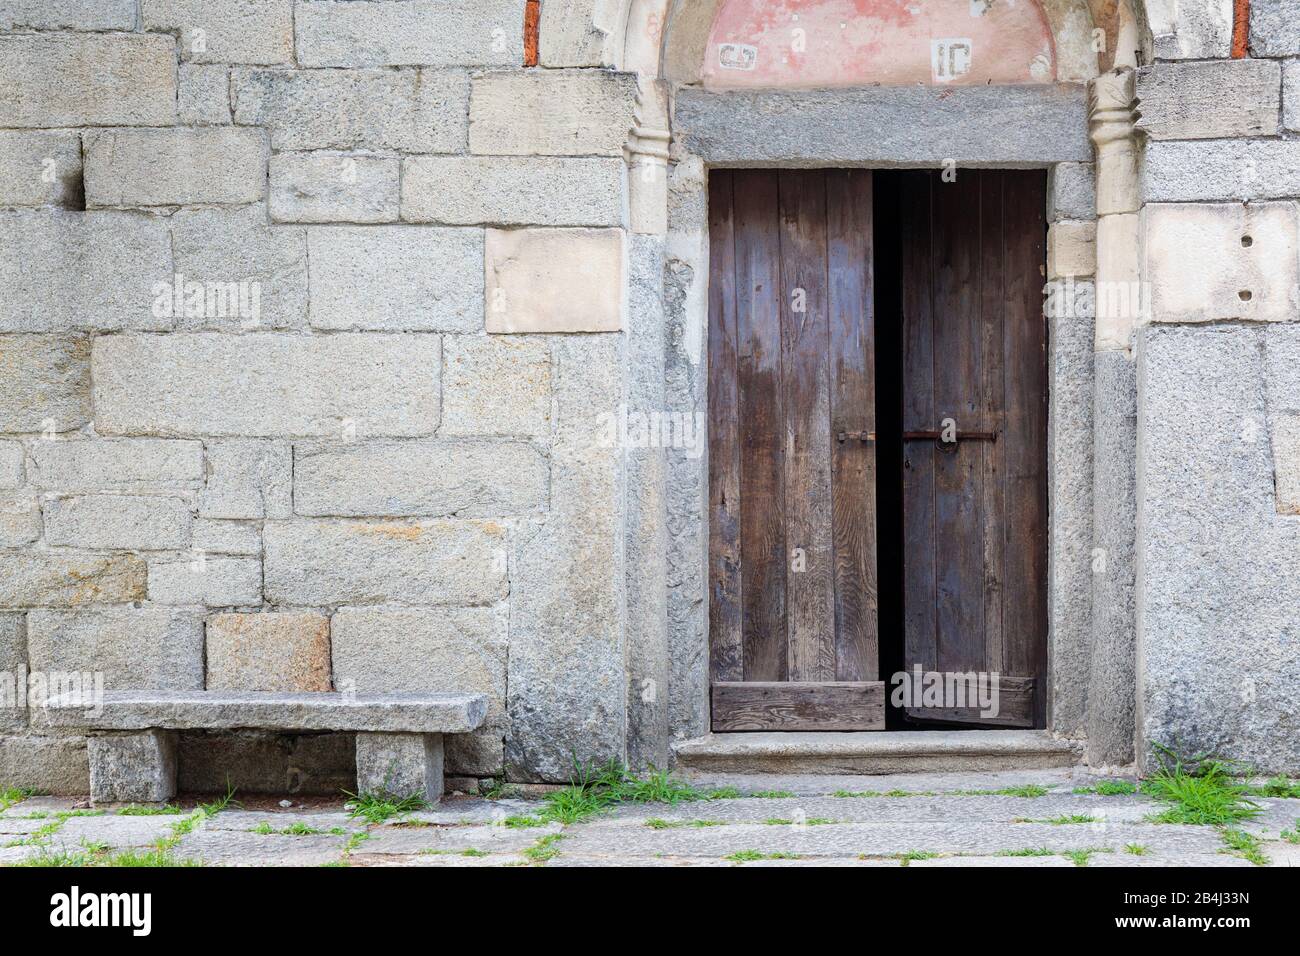 Europa, Italien, Piemont, Montorfano. Der Eingang zur Chiesa di San Giovanni Battista, einer der besterhaltenen romanischen Kirchen der Region Lago Ma Stock Photo